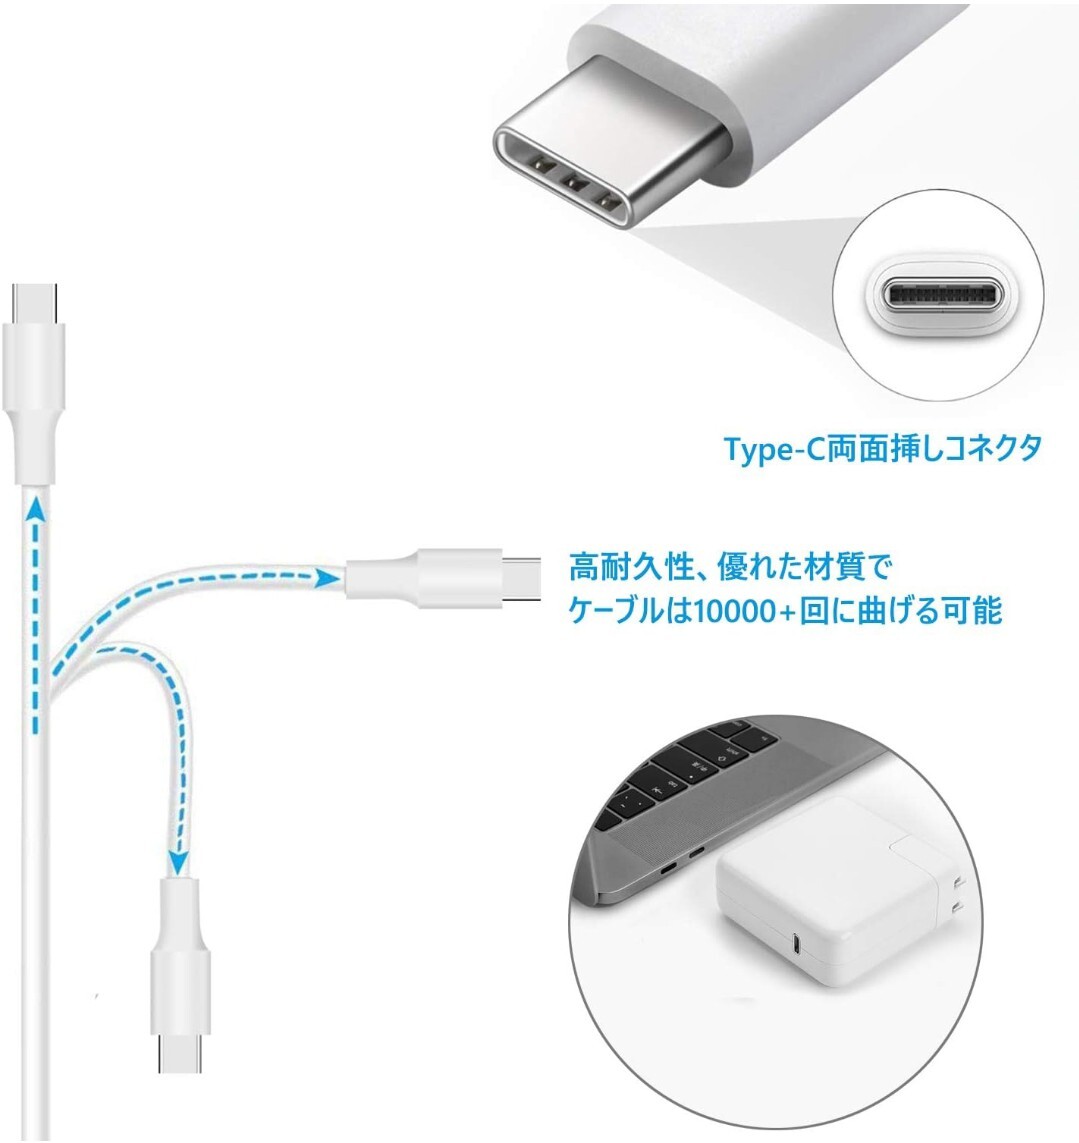 87W 充電器 Type-c 急速 USB C PD 電源アダプタ MacBook Pro/任天堂 Switch 対応などのUSB-Cデバイスでよく使用されます ACアダプタA36の画像4